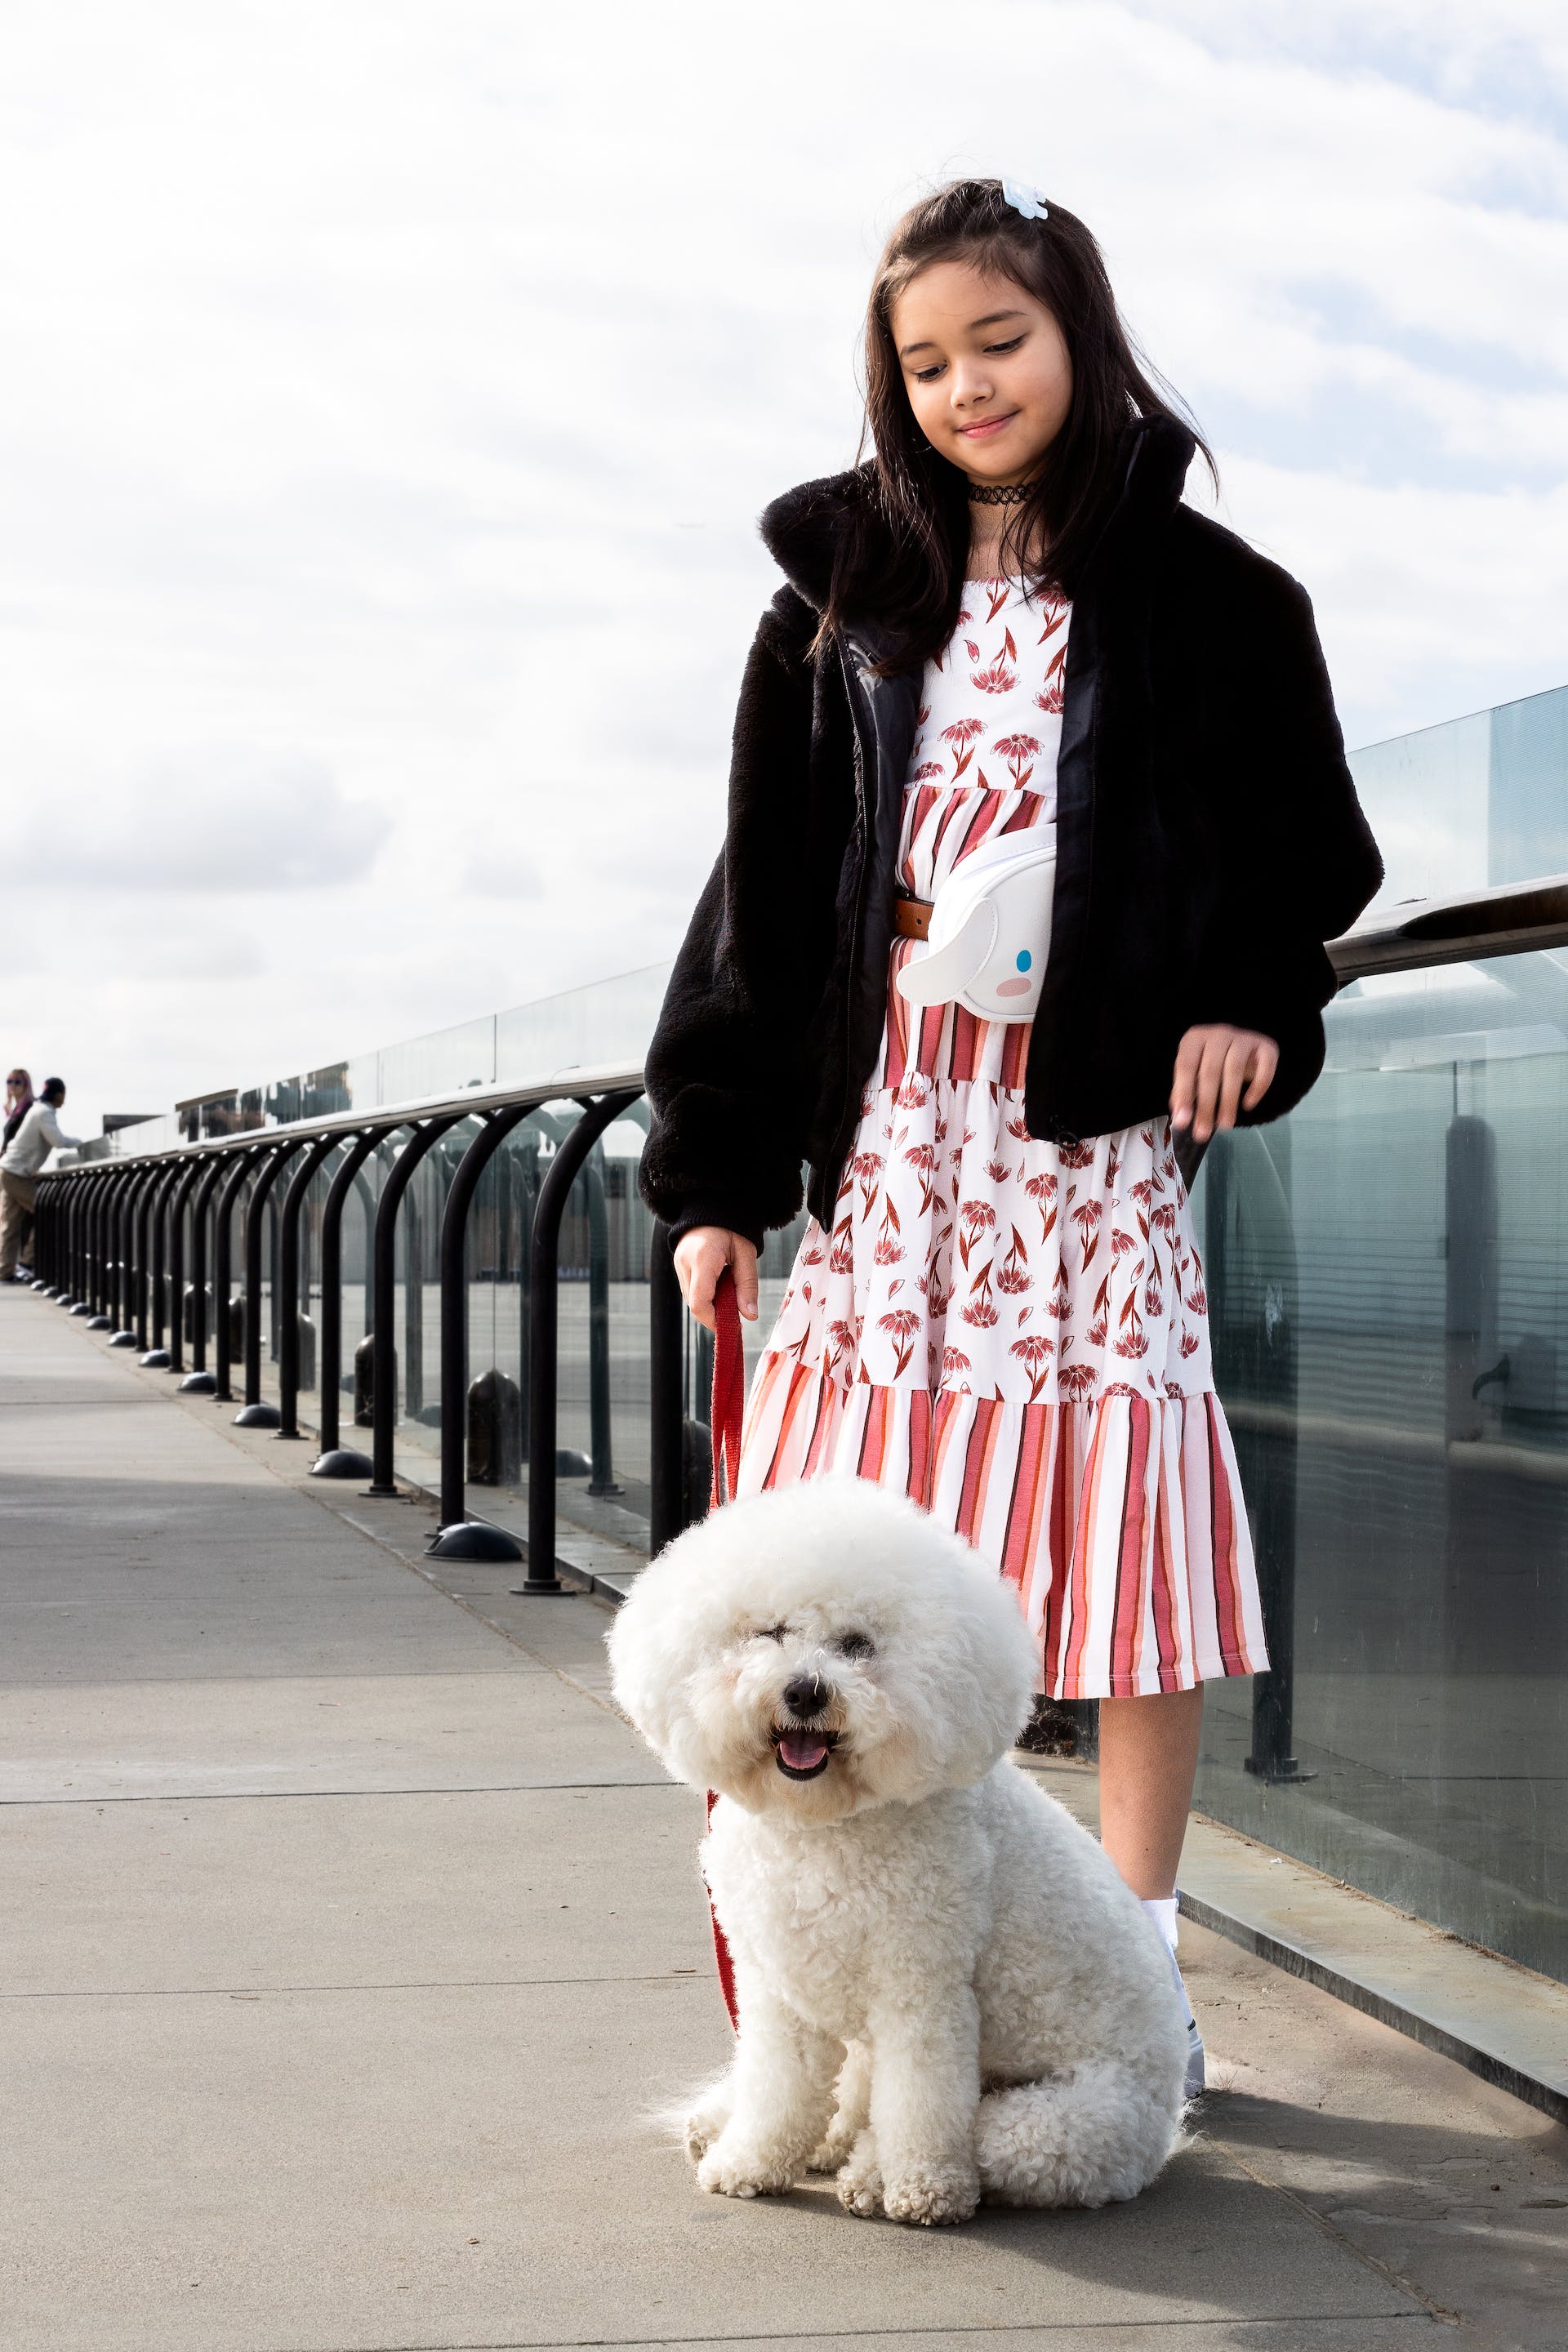 Kleines Mädchen mit ihrem Hund auf einer Brücke | Quelle: Pexels